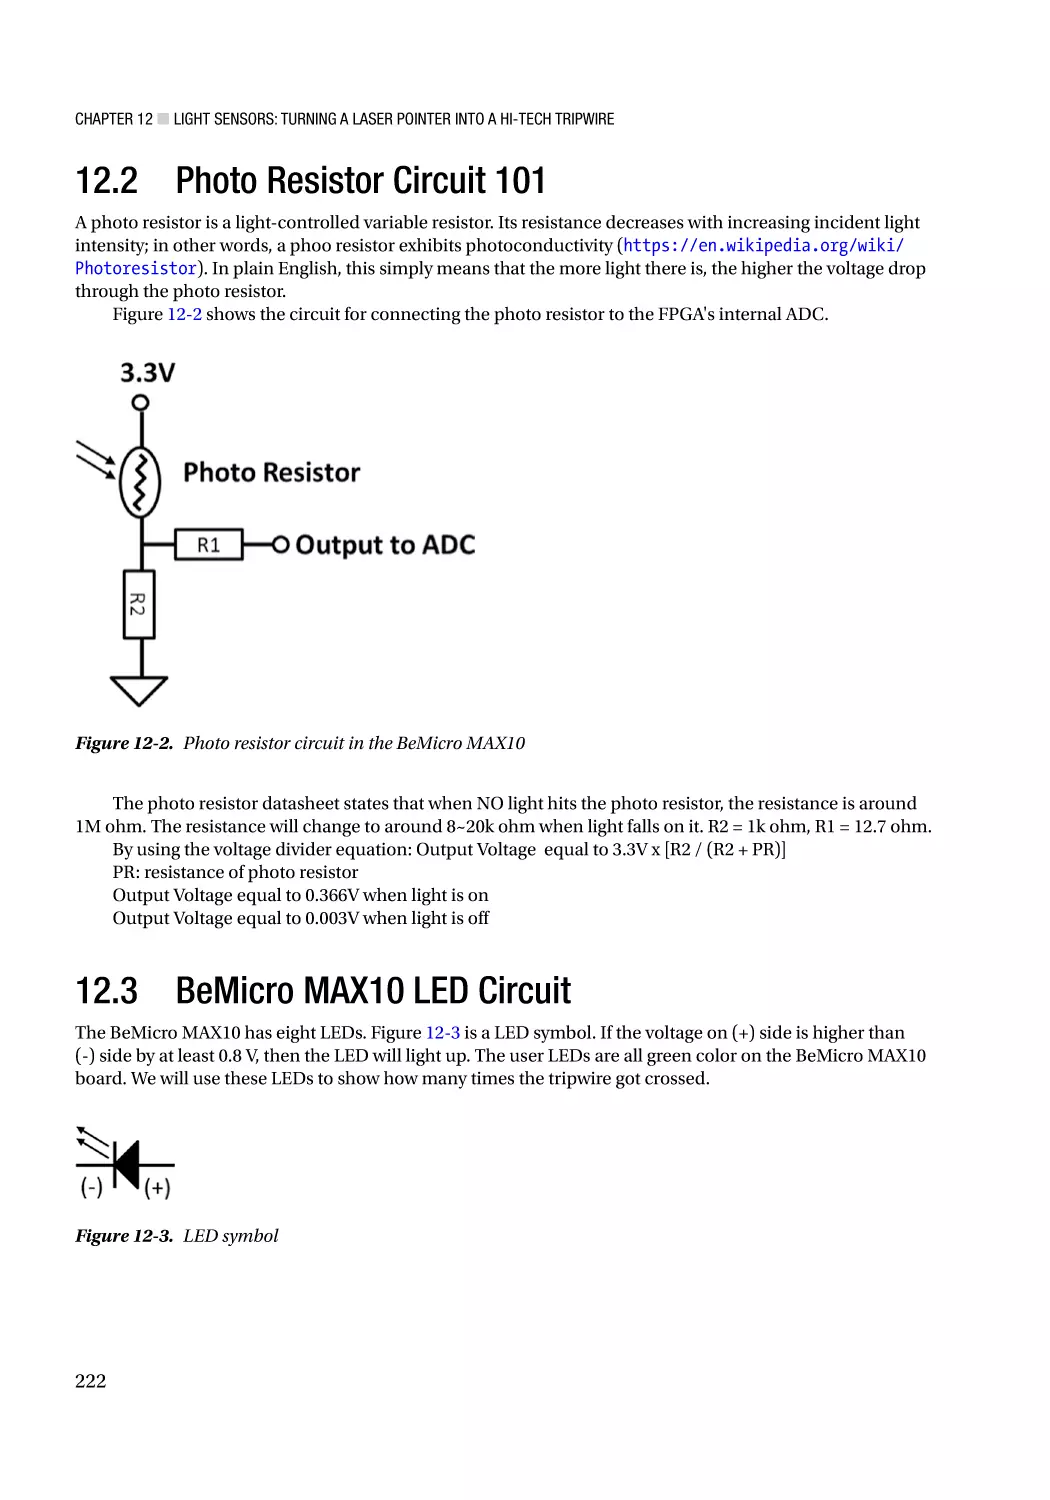 12.2 Photo Resistor Circuit 101
12.3 BeMicro MAX10 LED Circuit